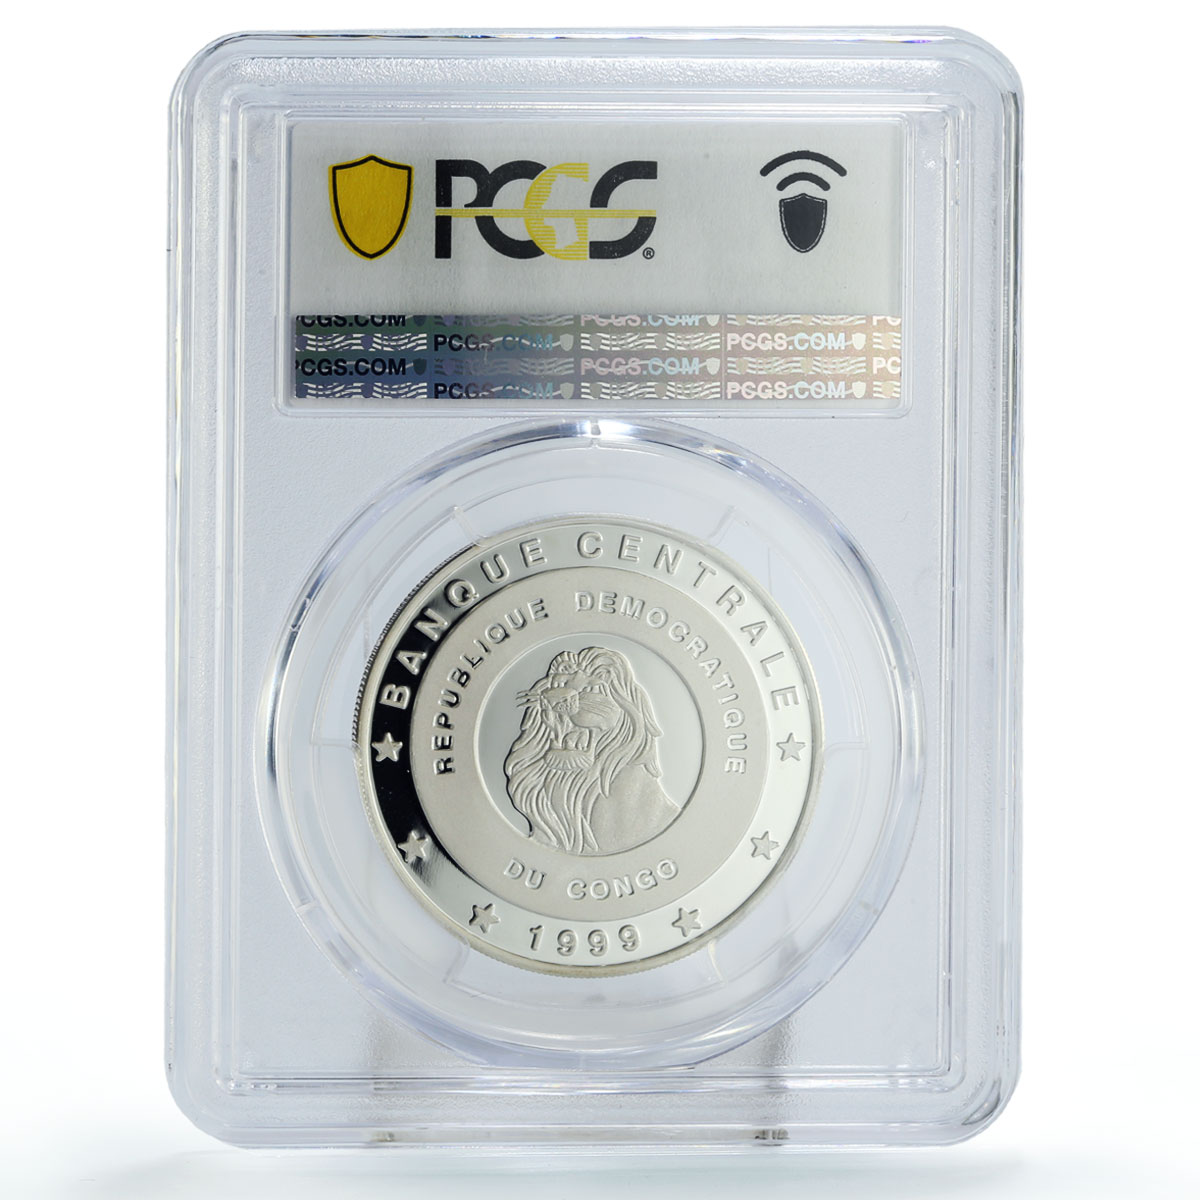 Congo 10 francs Conservation Wildlife Hippo Fauna PR70 PCGS silver coin 1999